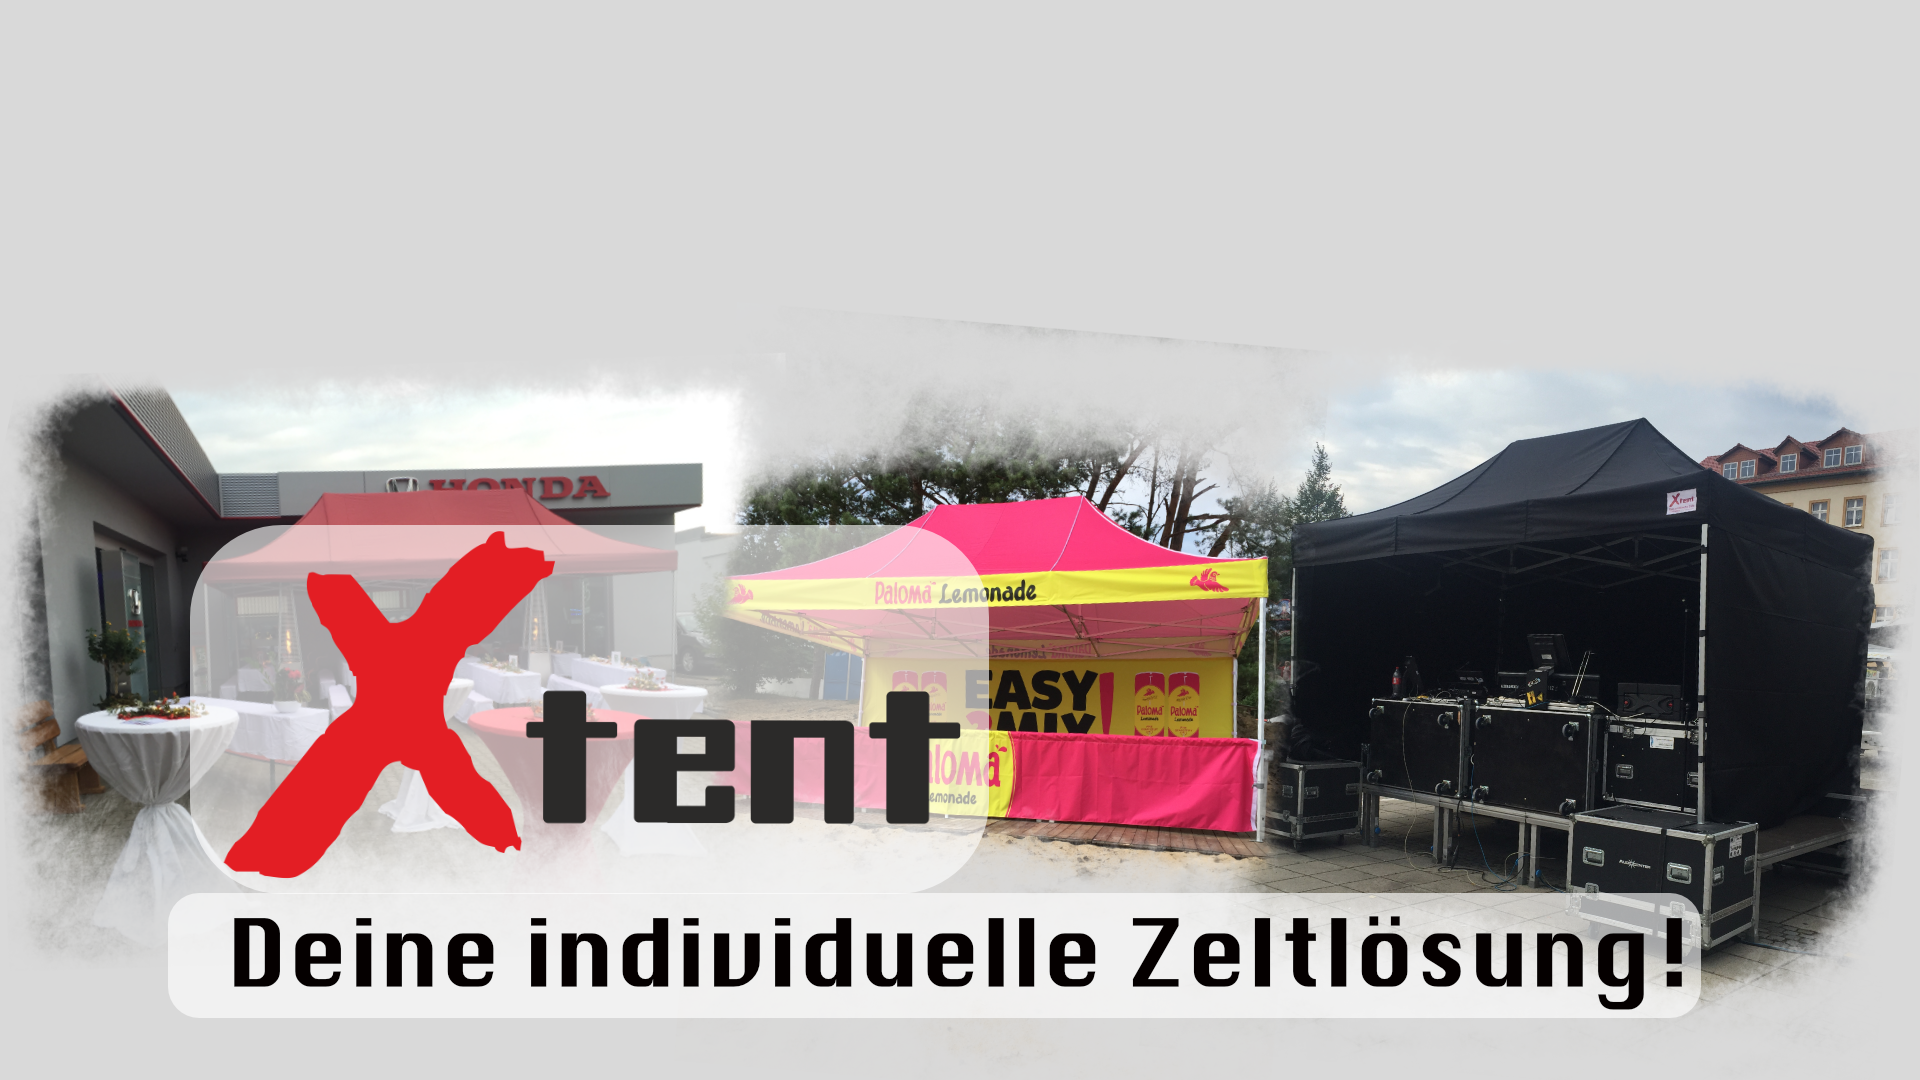 (c) X-tent.com